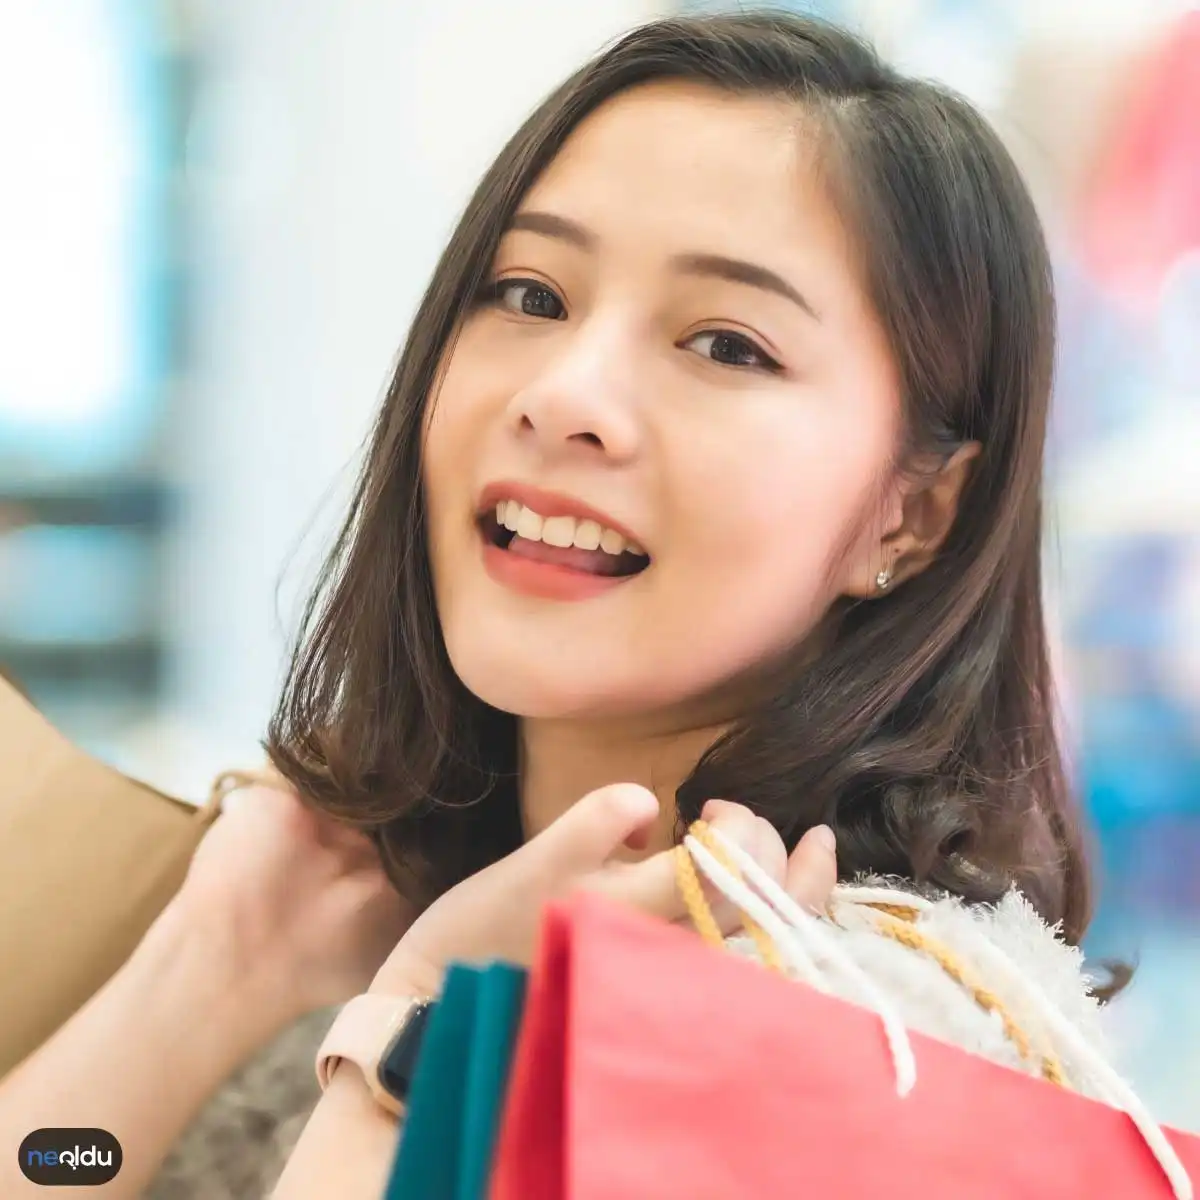 Kadınların Alışveriş Yapma Nedenleri